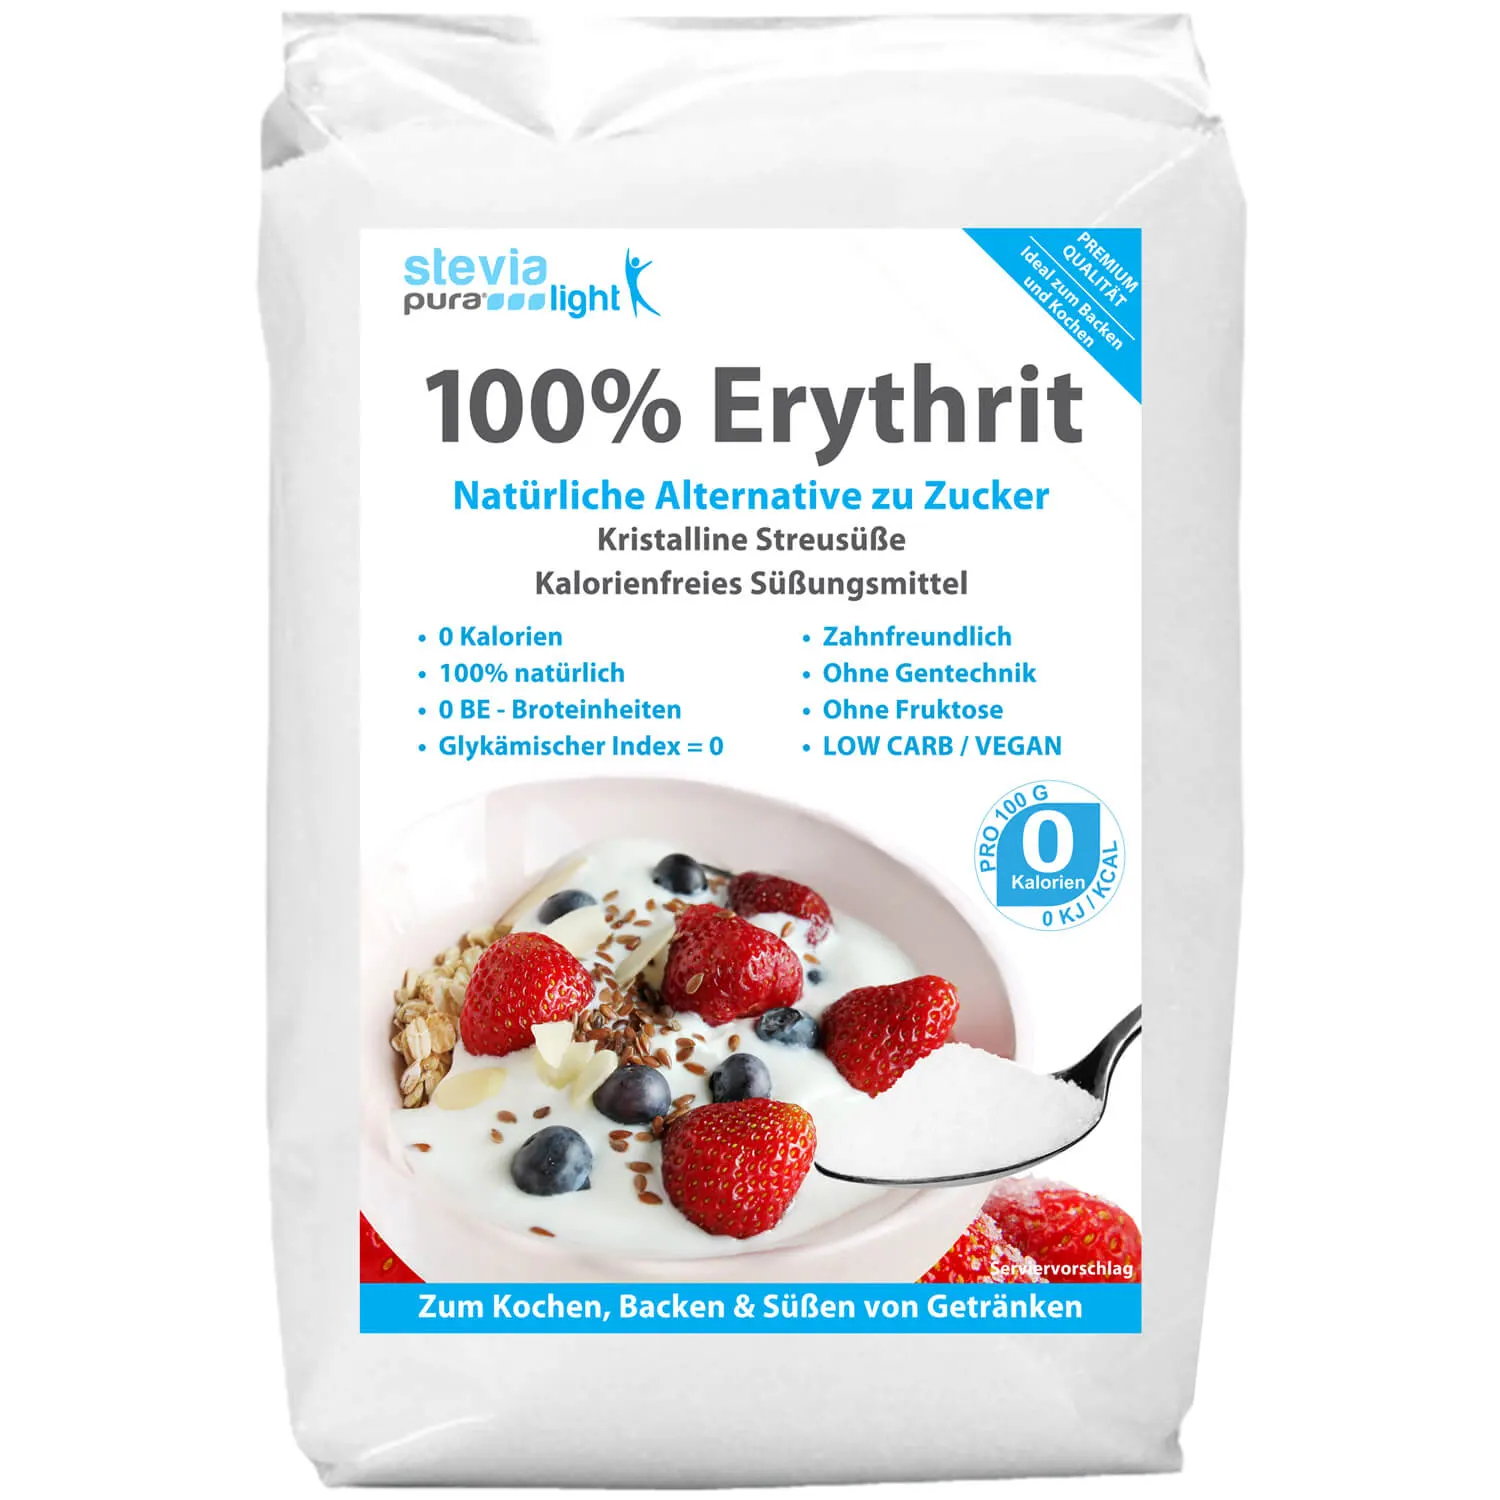 Erythrit kaufen: Der Zuckerersatz wird auch Erythritol genannt.